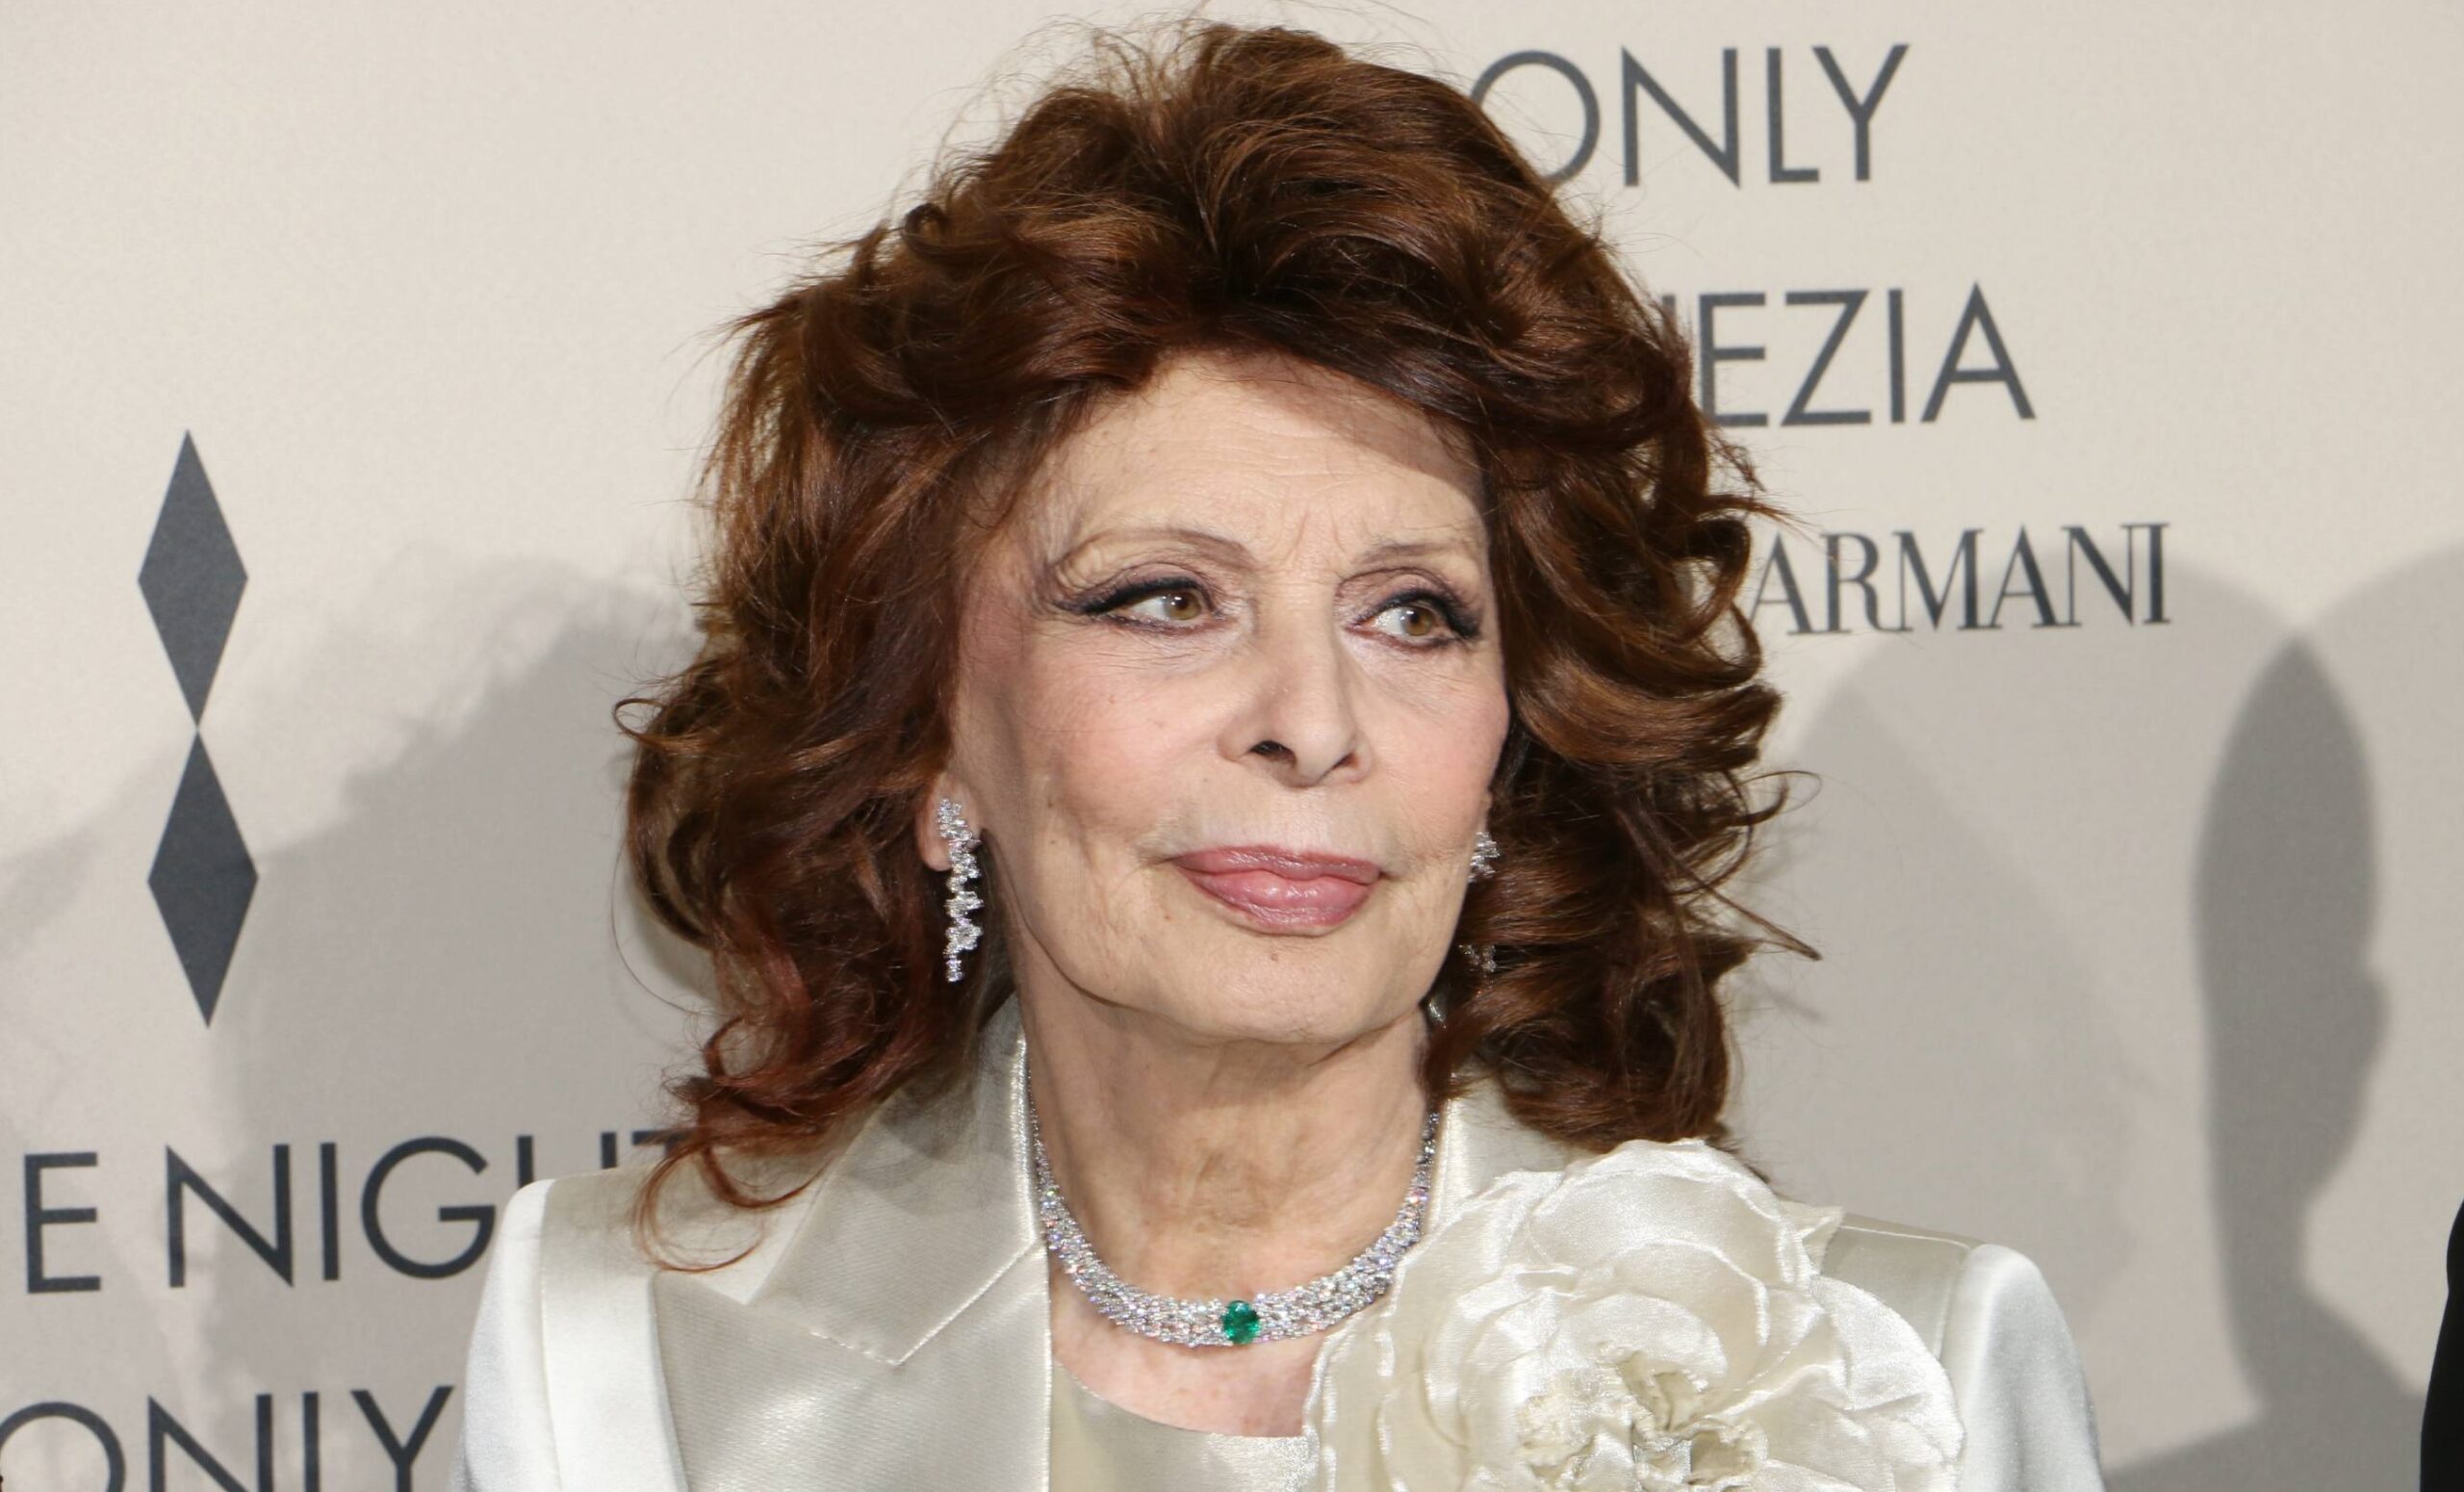 Sophia Loren brutta caduta in casa: operata all'anca, ha diverse fratture